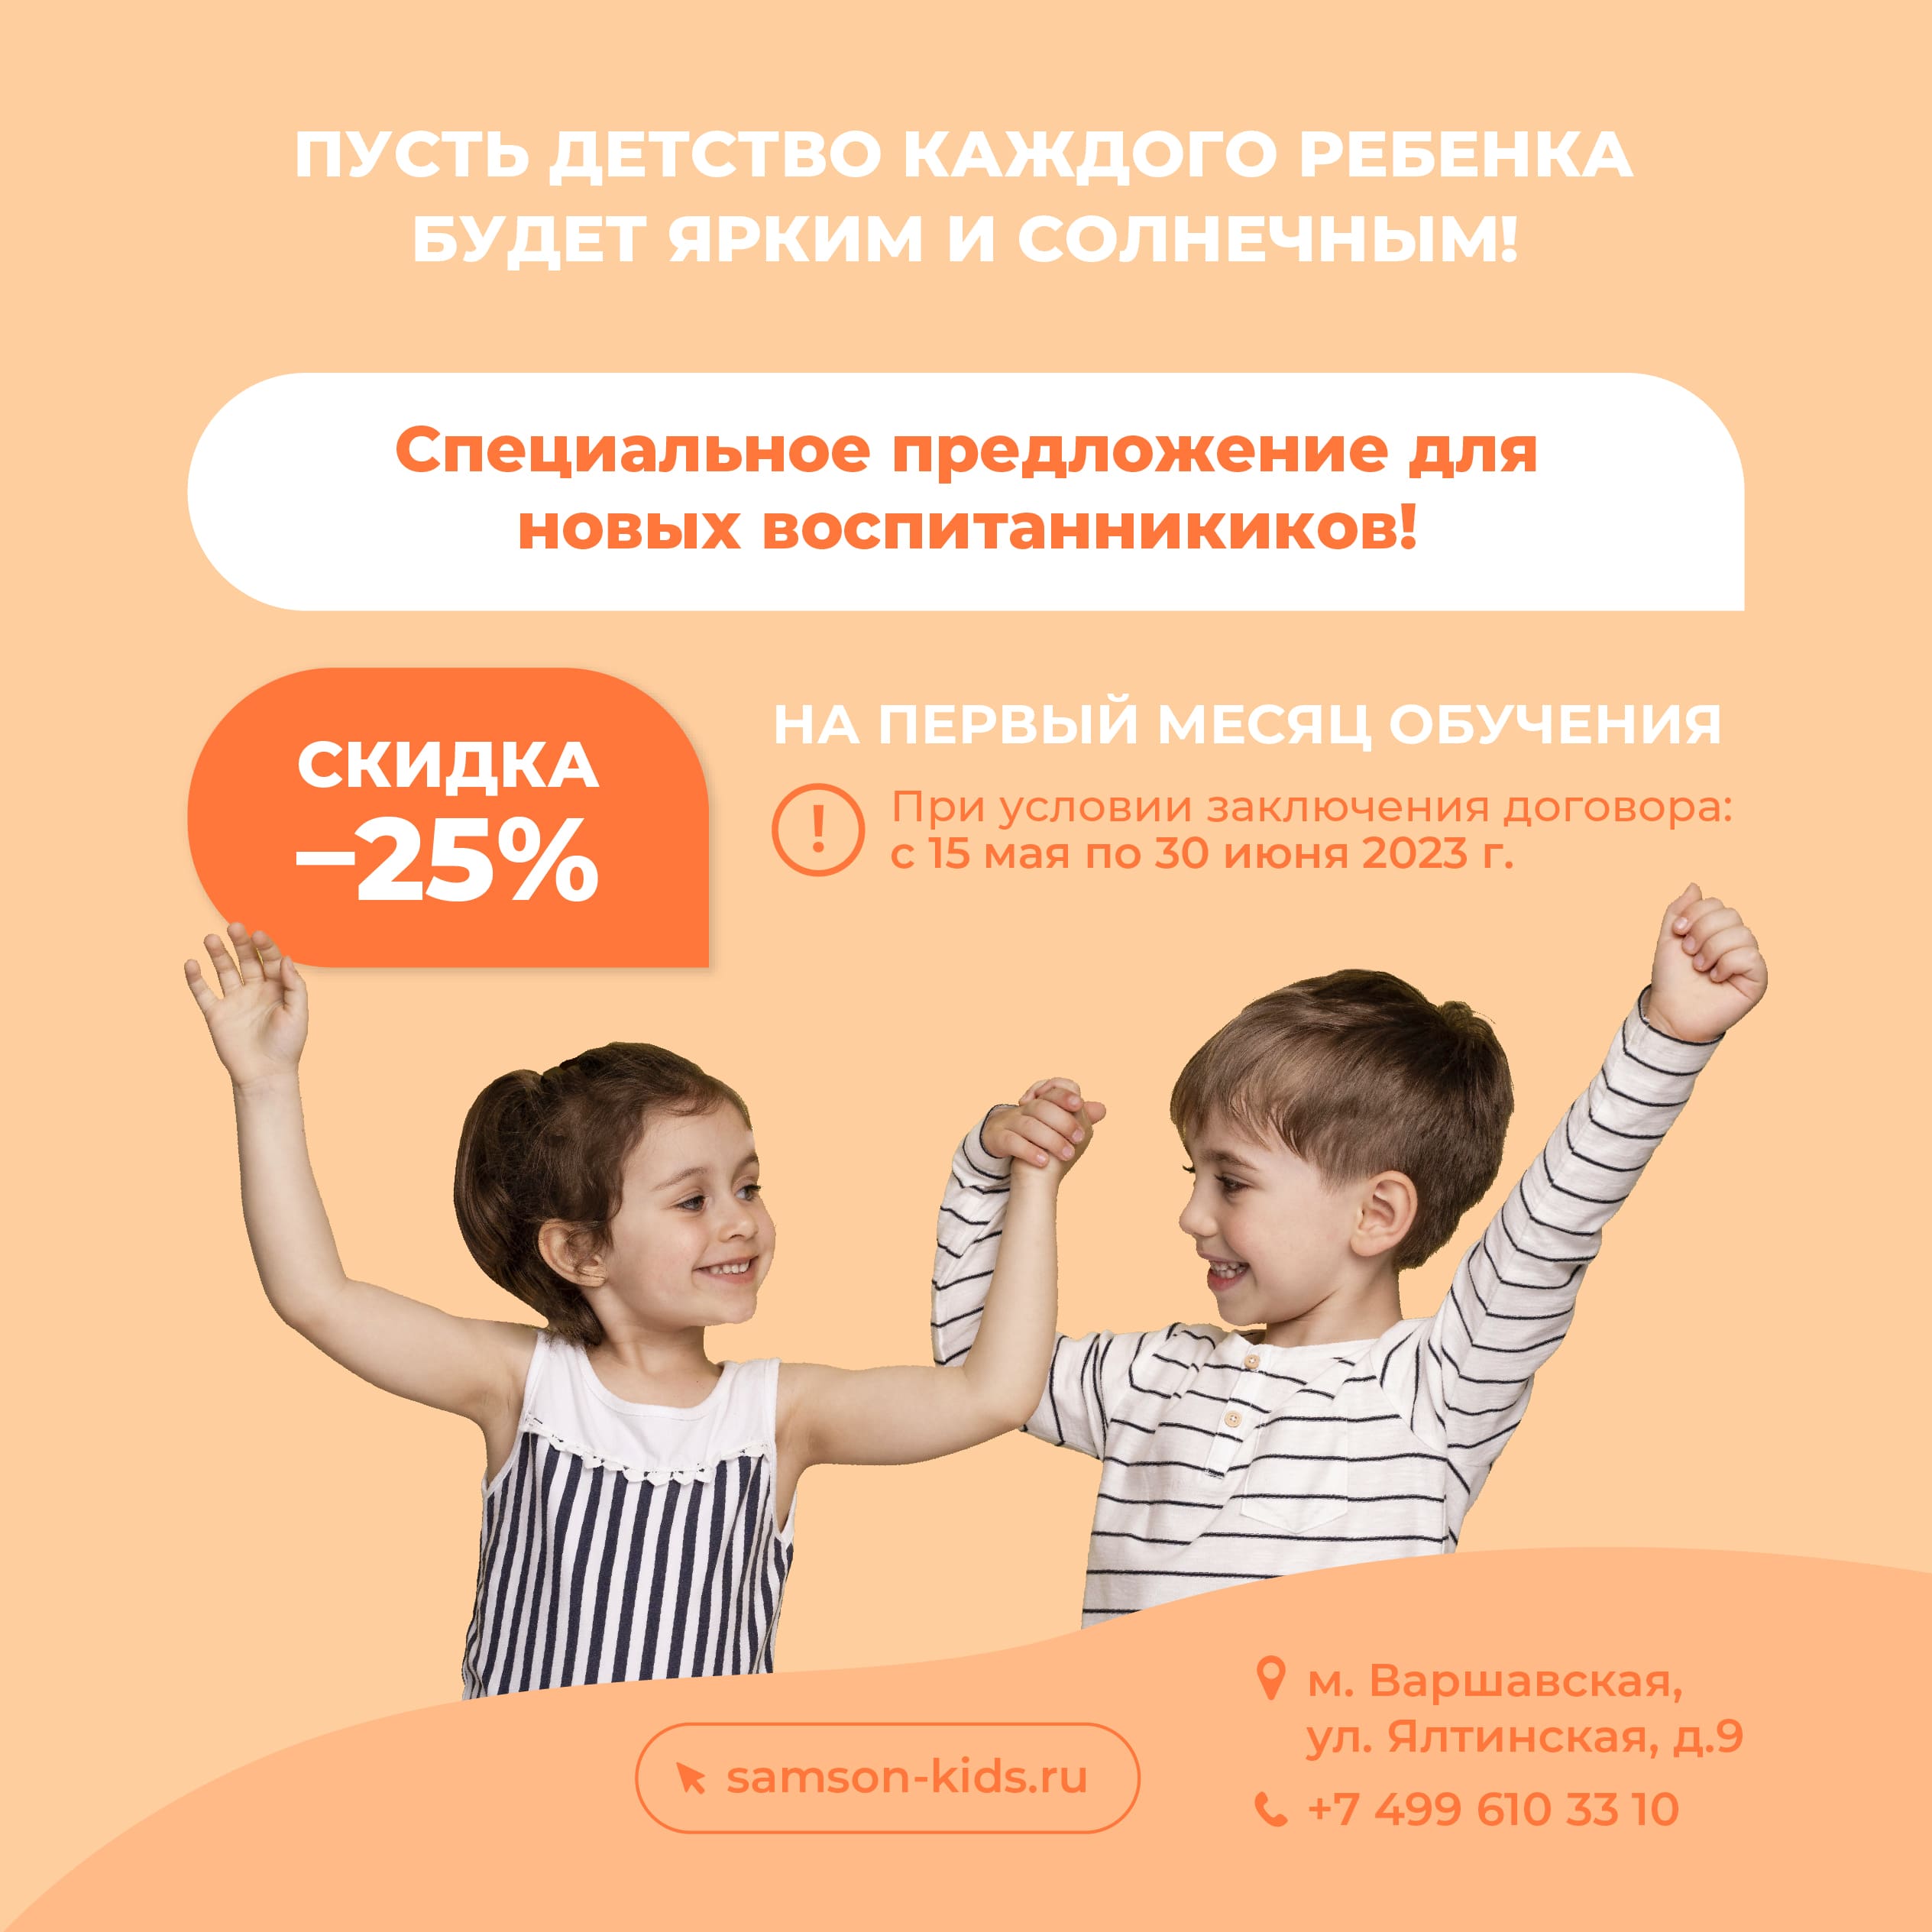 Частный детский сад «САМСОН» - Скидка 25% при заключении договора до 30 июня на Ялтинской, д.9!